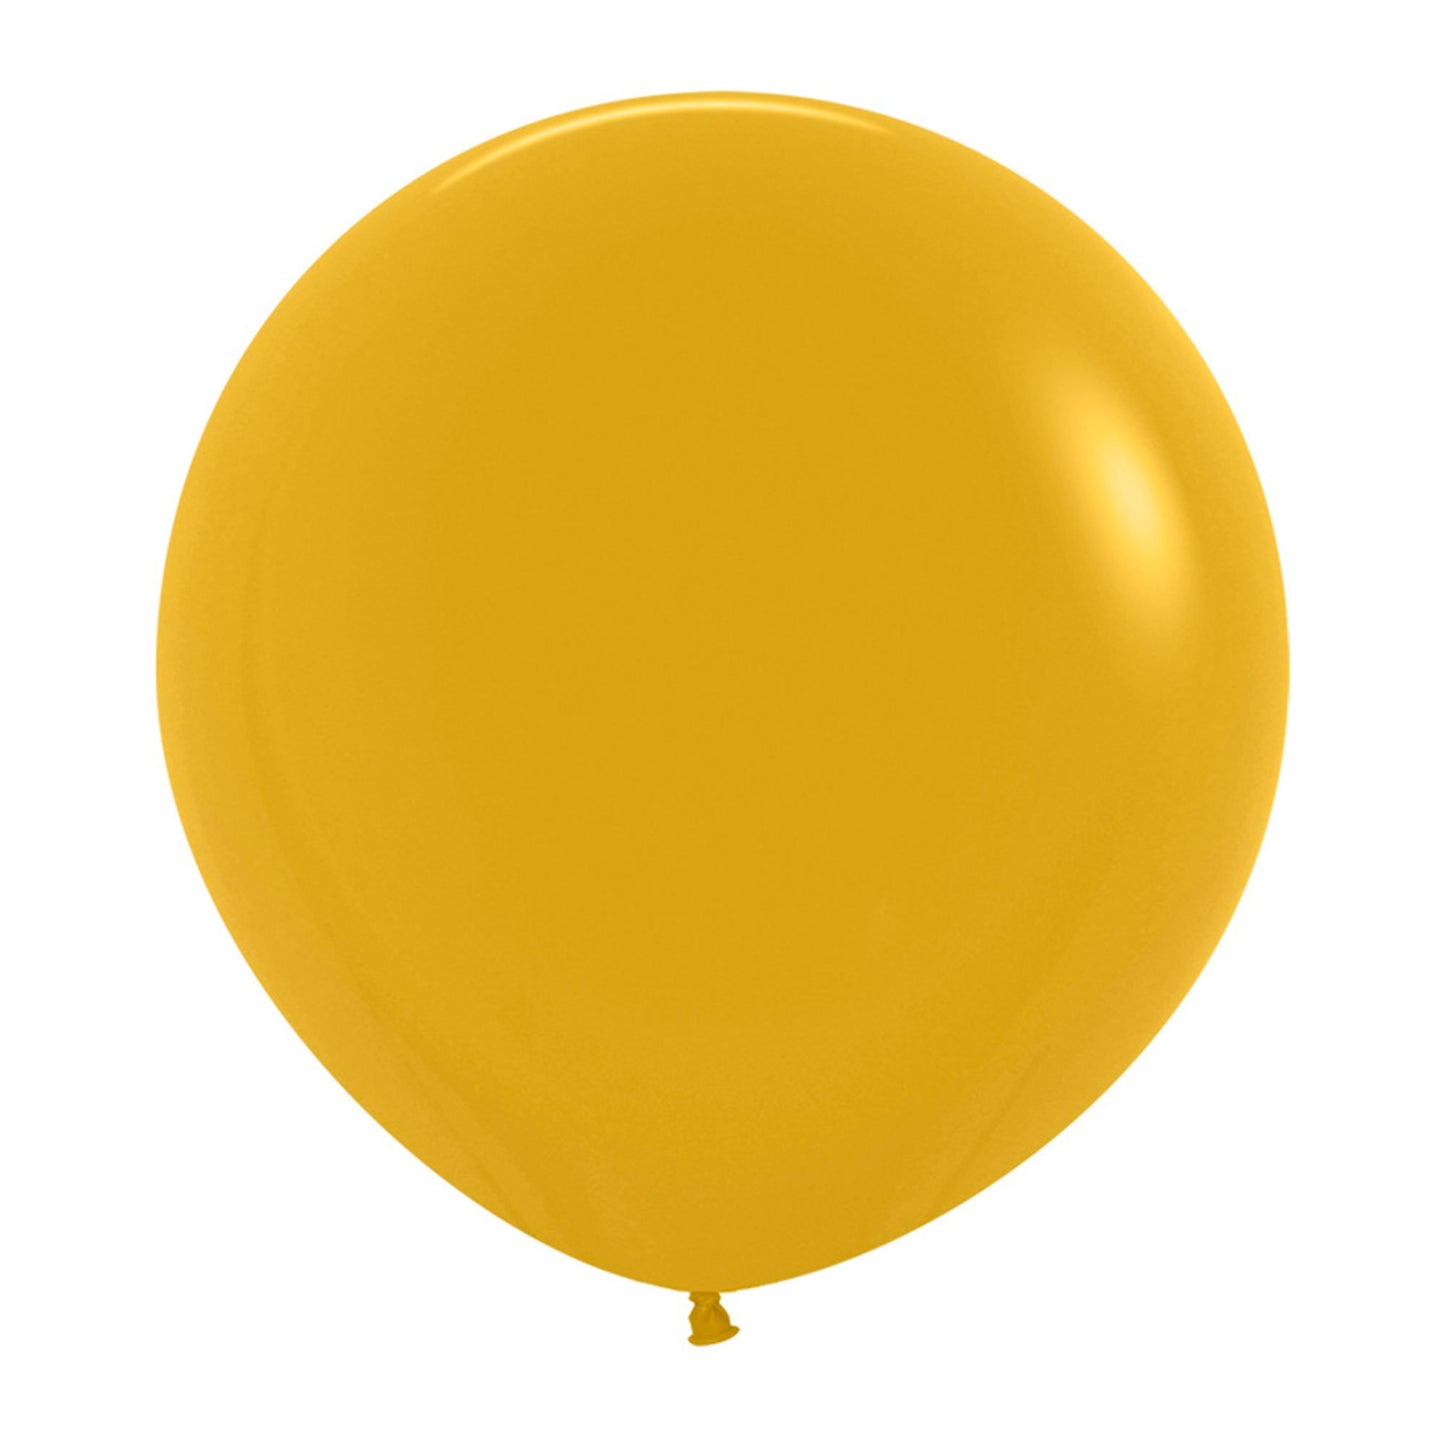 60cm Jumbo Round Balloon - Fashion Mustard